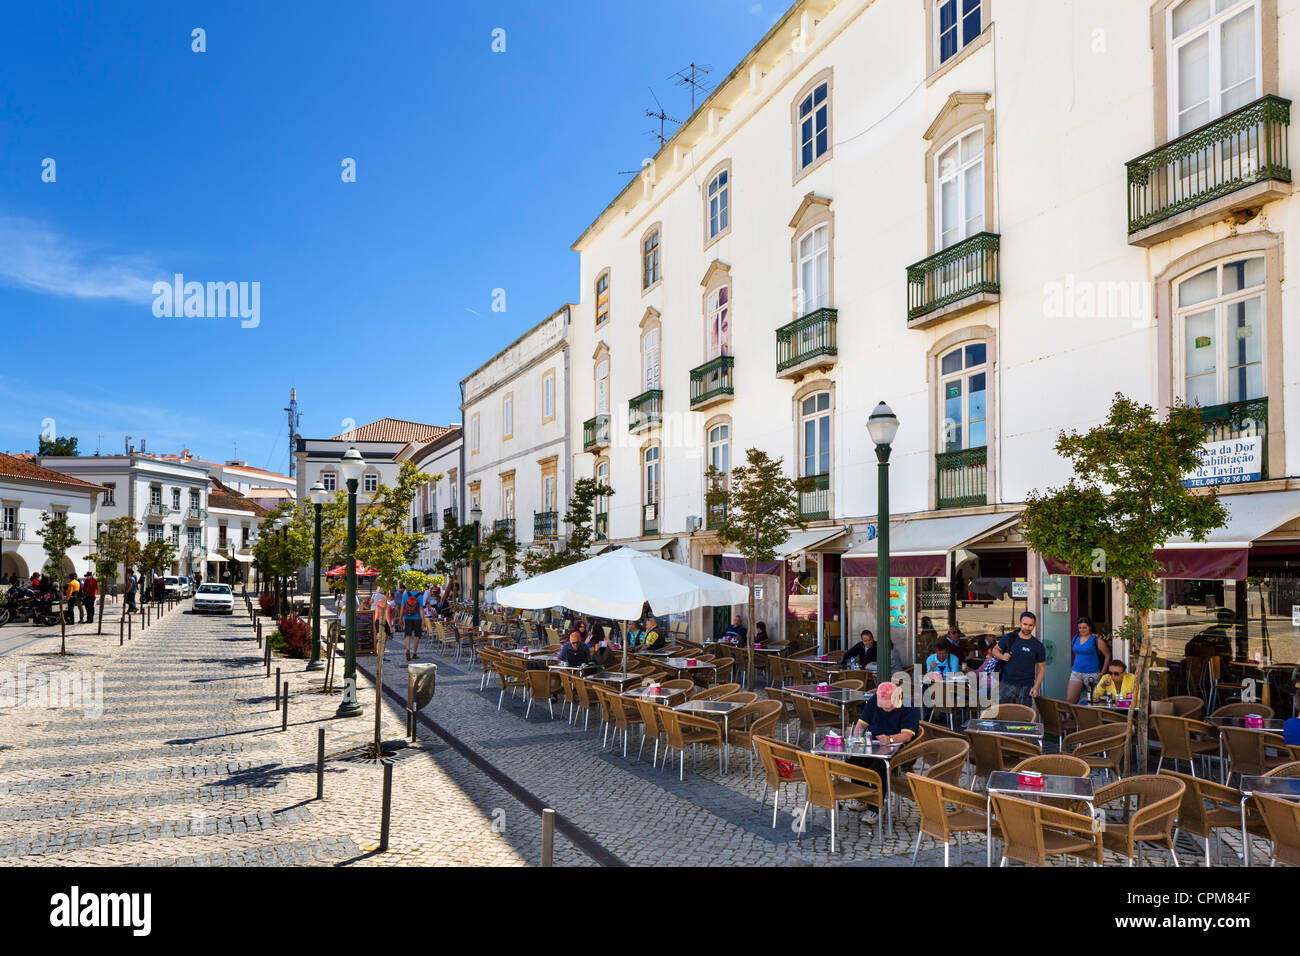 Caffè e negozi a Praca da Republica nella Città Vecchia, Tavira, Algarve, PORTOGALLO Foto Stock